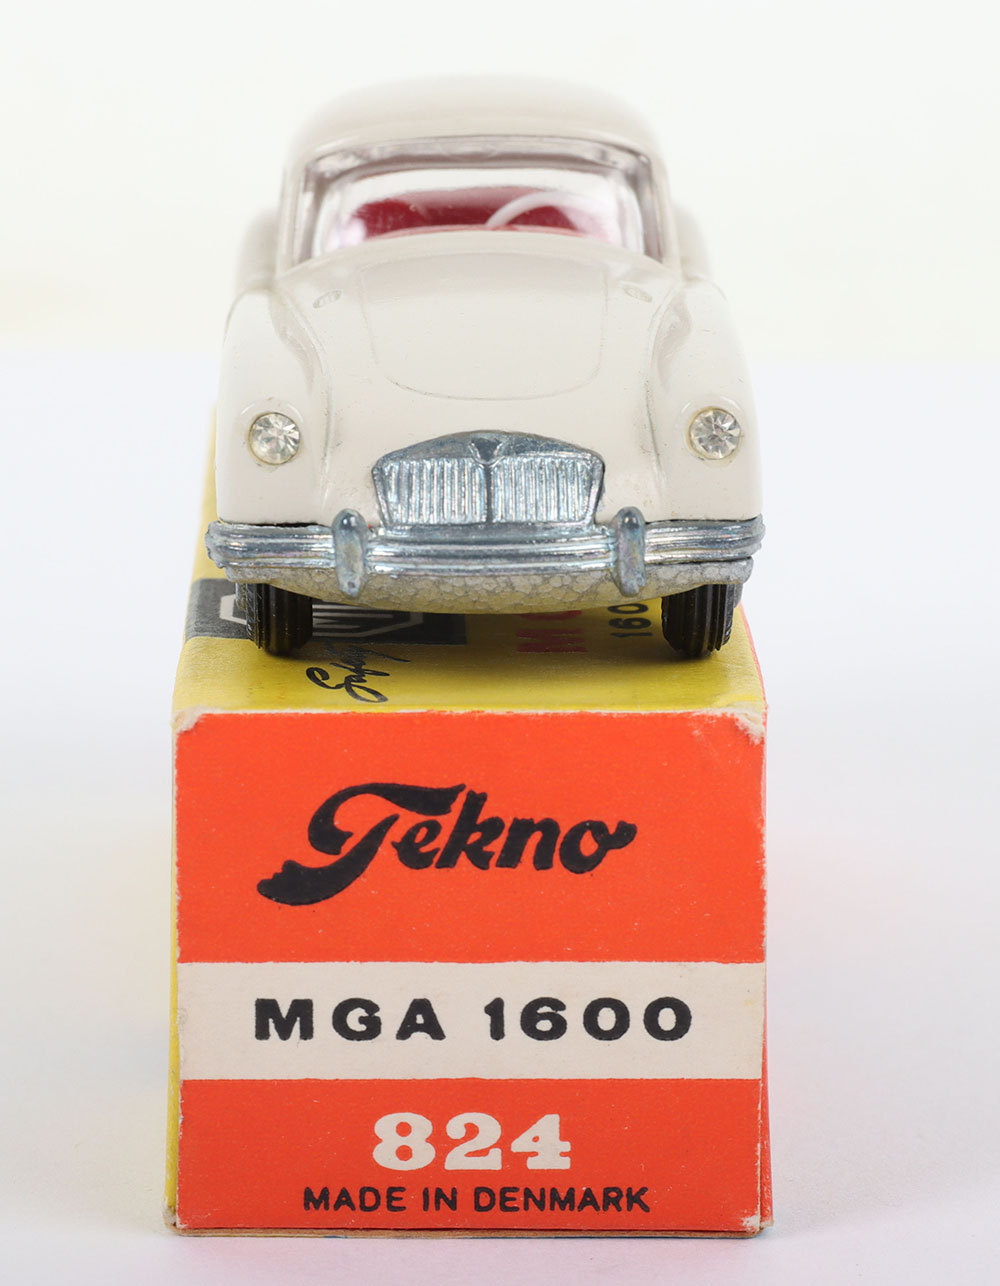 Tekno 824 MGA 1600 - Image 4 of 5